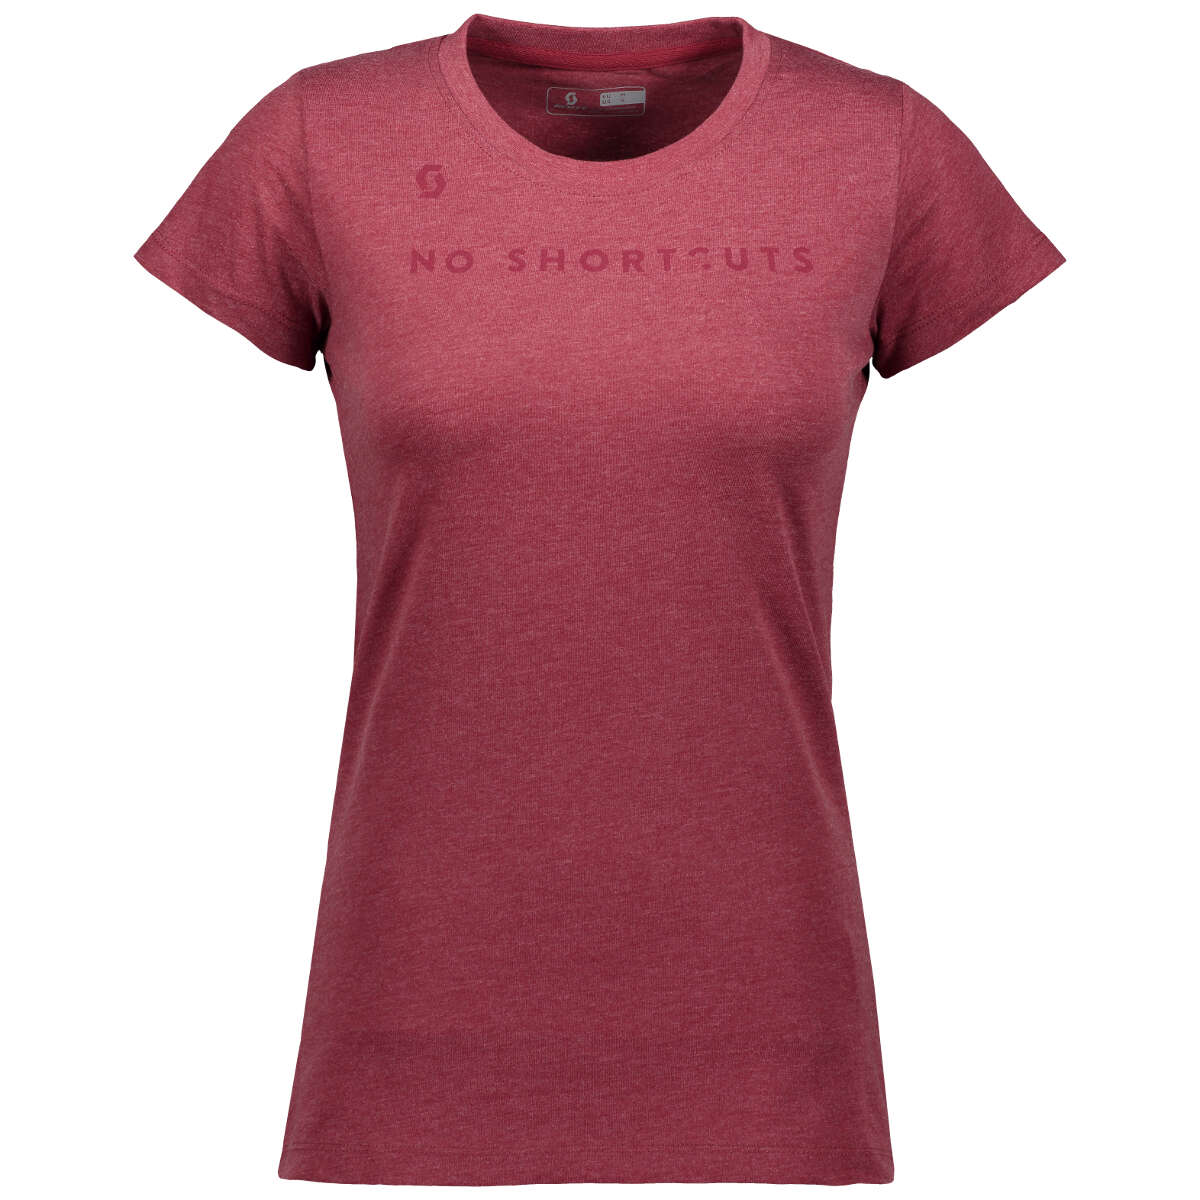 Scott Femme T-Shirt 10 No Shortcuts Tibetan Heather Red